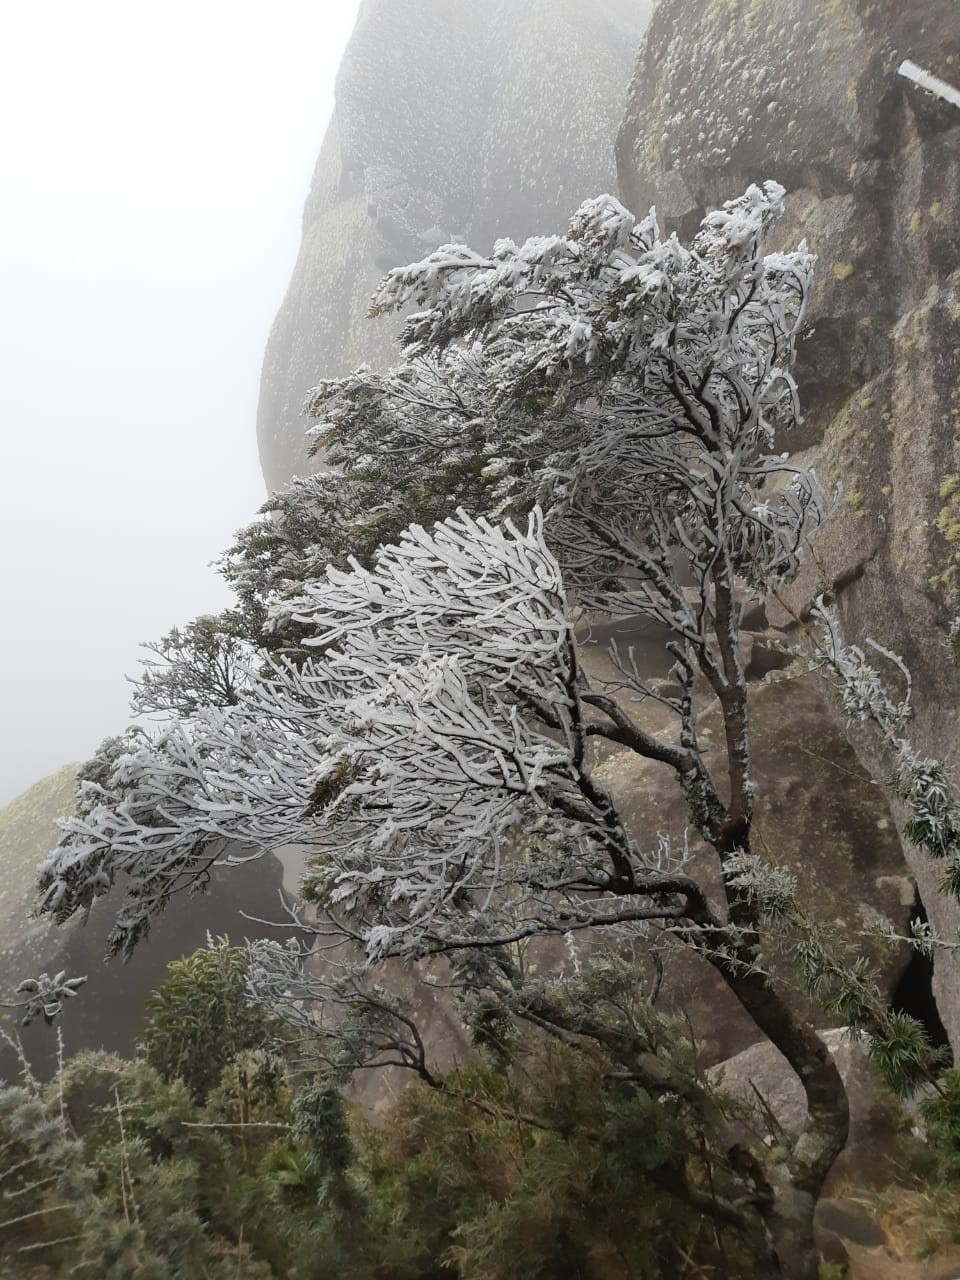 Estação do Parque Nacional do Itatiaia registra -8,3°C e geada deixa 'tudo congelado'